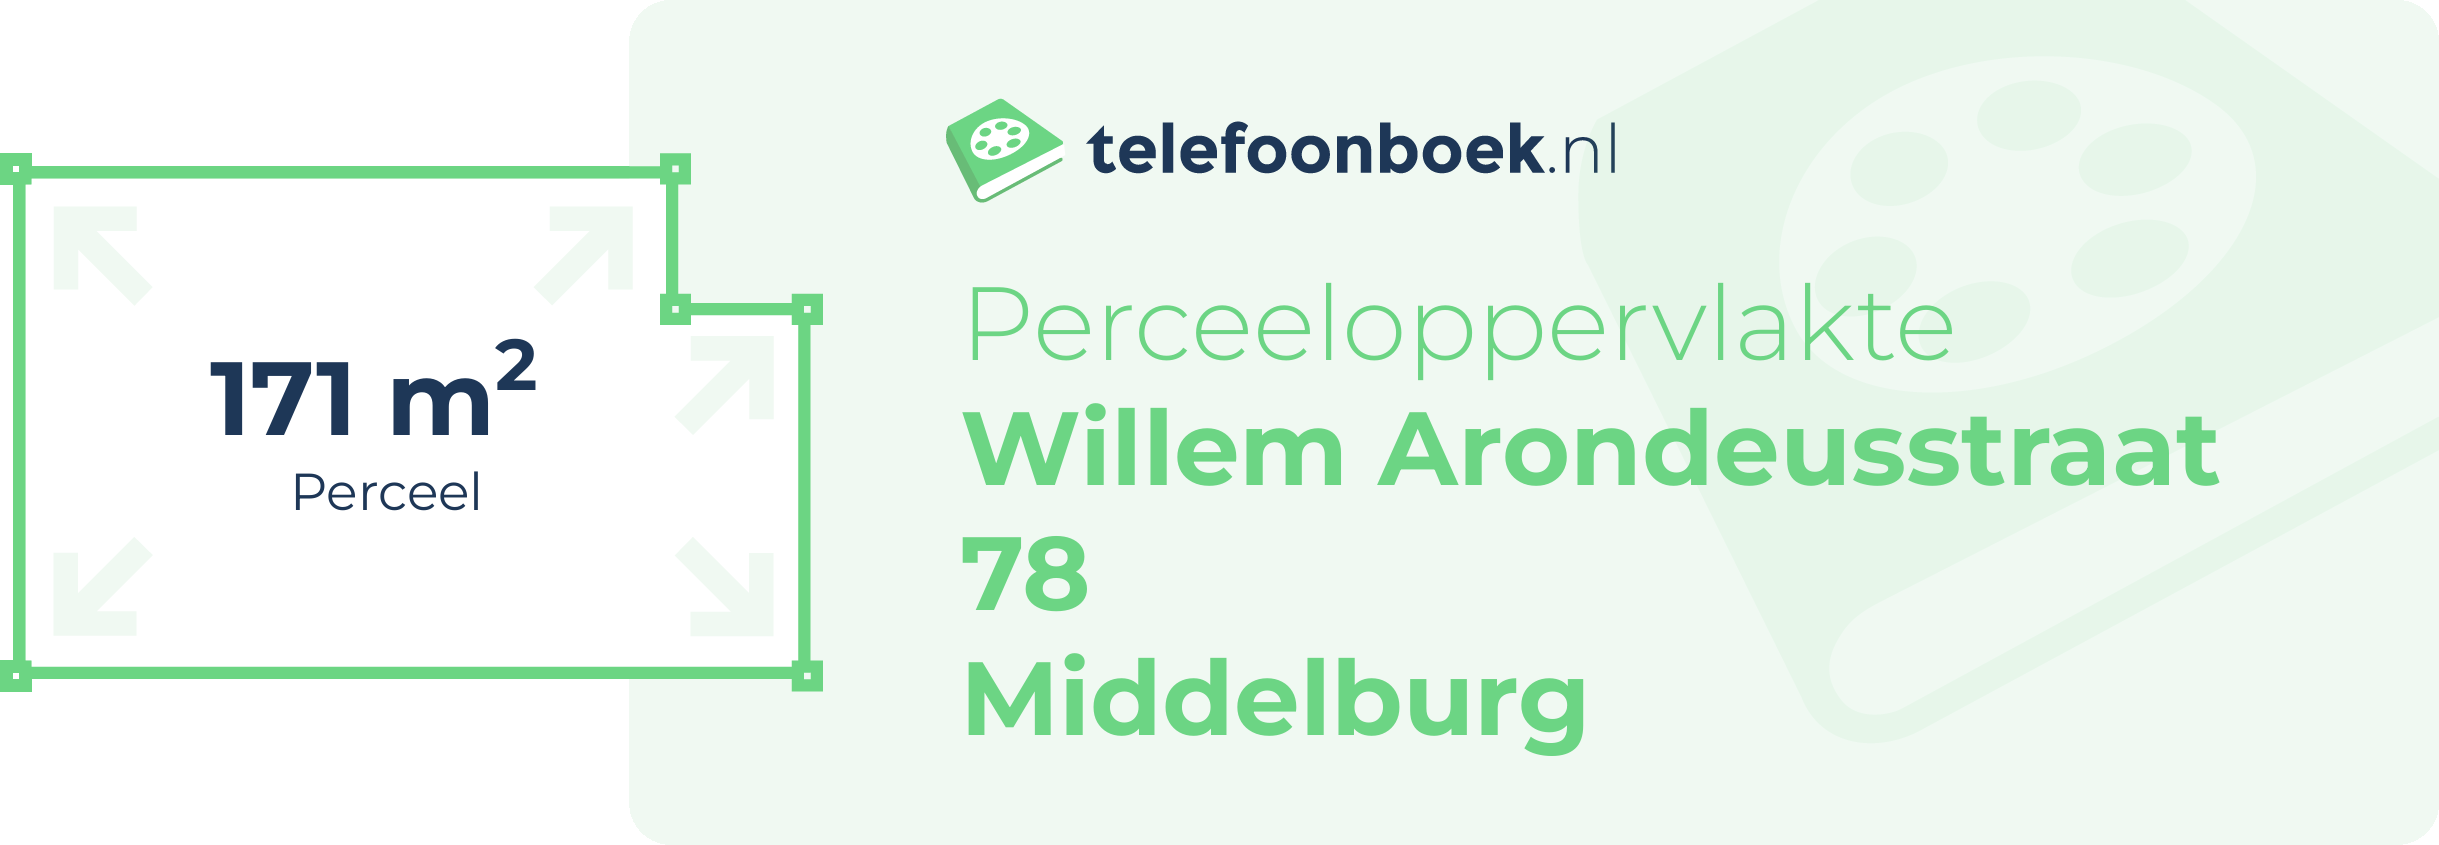 Perceeloppervlakte Willem Arondeusstraat 78 Middelburg